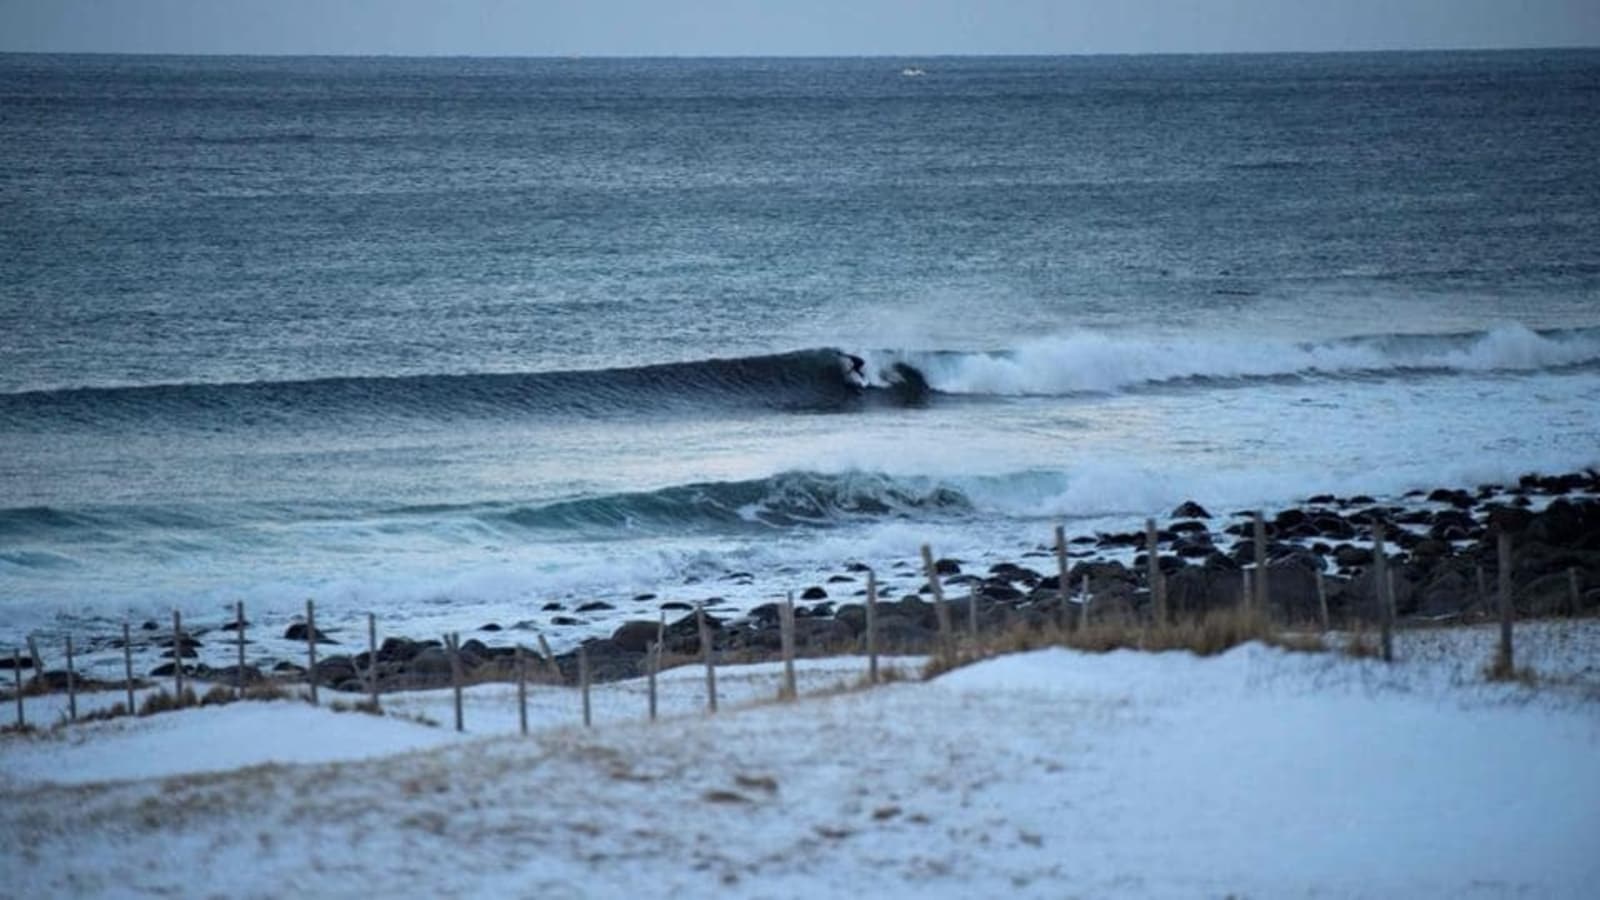 North Atlantic Ocean temperature sets new record high: Report